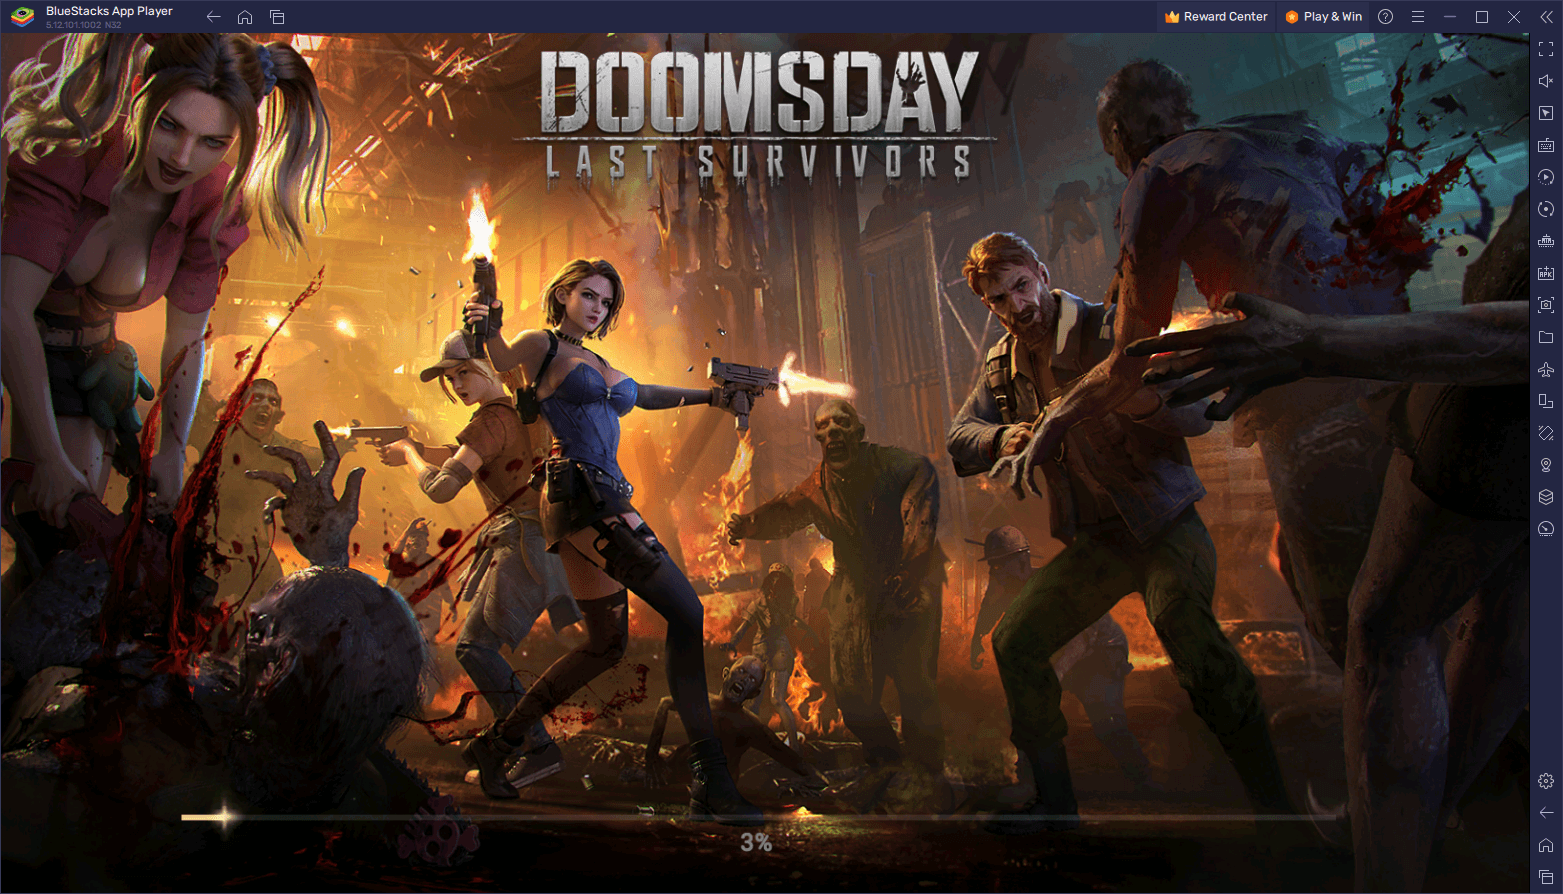 Survivez et prospérez dans Doomsday: Last Survivors avec ce nouveau code promo.